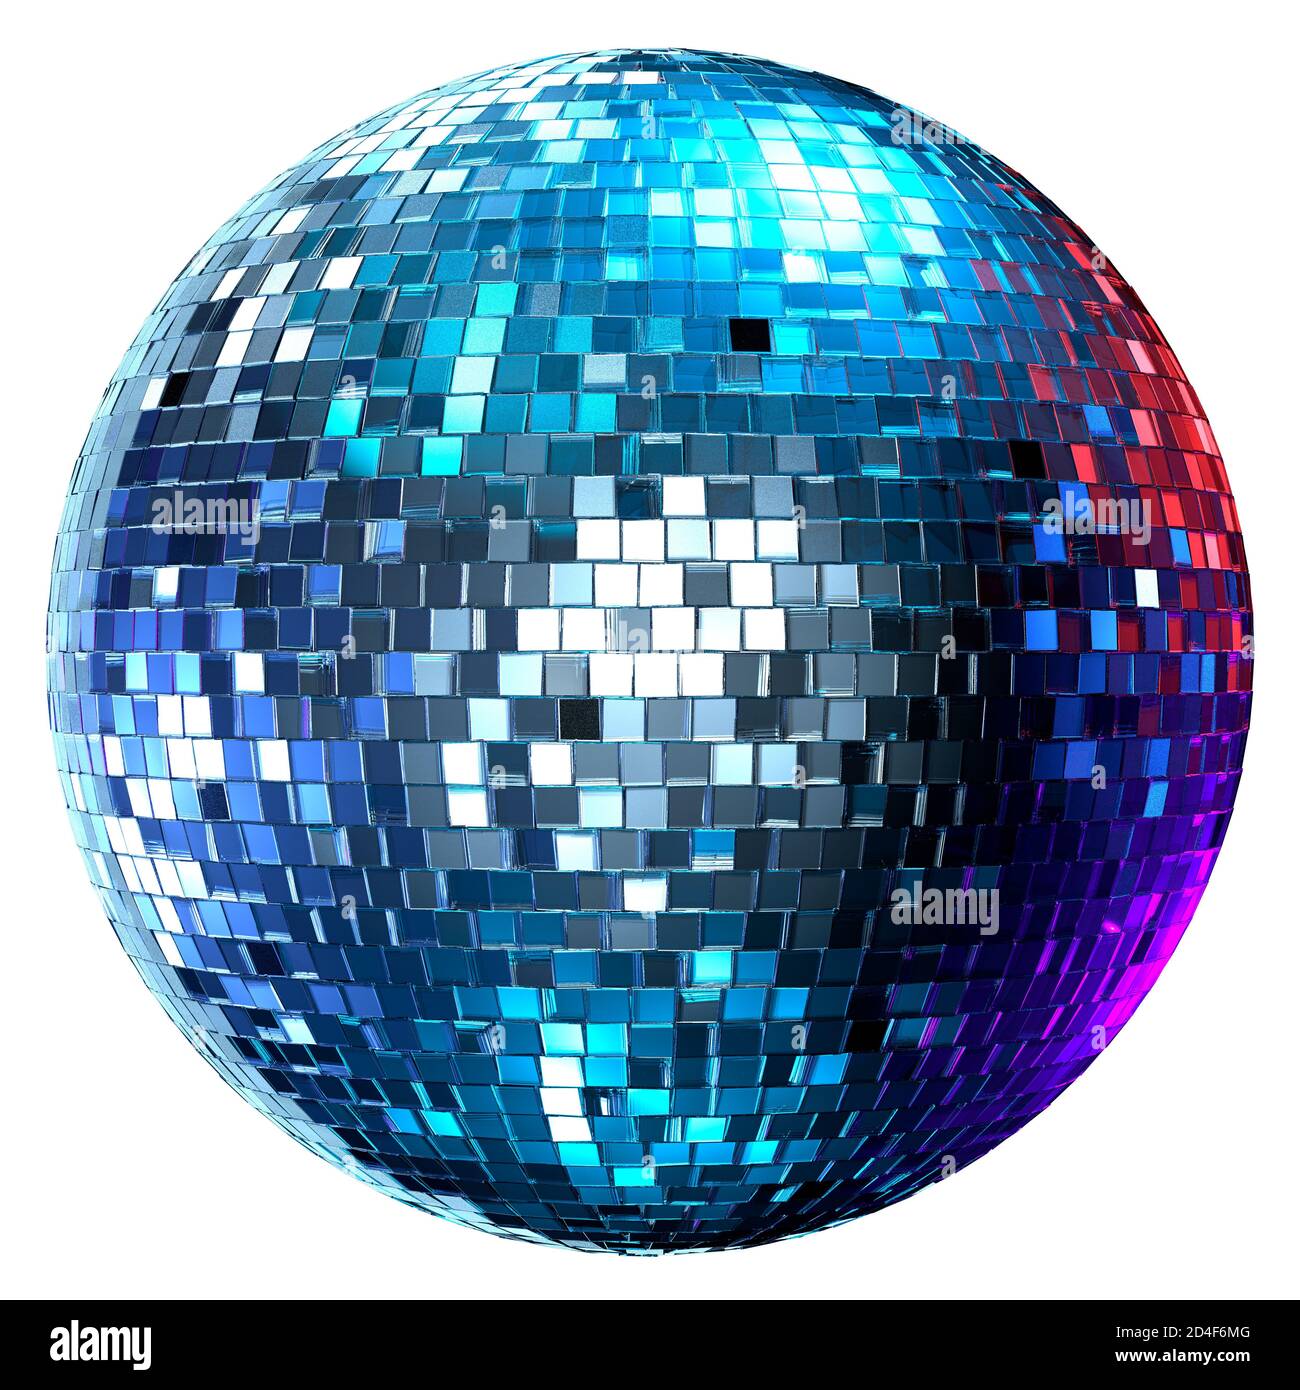 Estrictamente ven Dancing Mirrorball Disco Ball. Discoball. Recorte, fondo blanco. Discoteca. Foto de stock